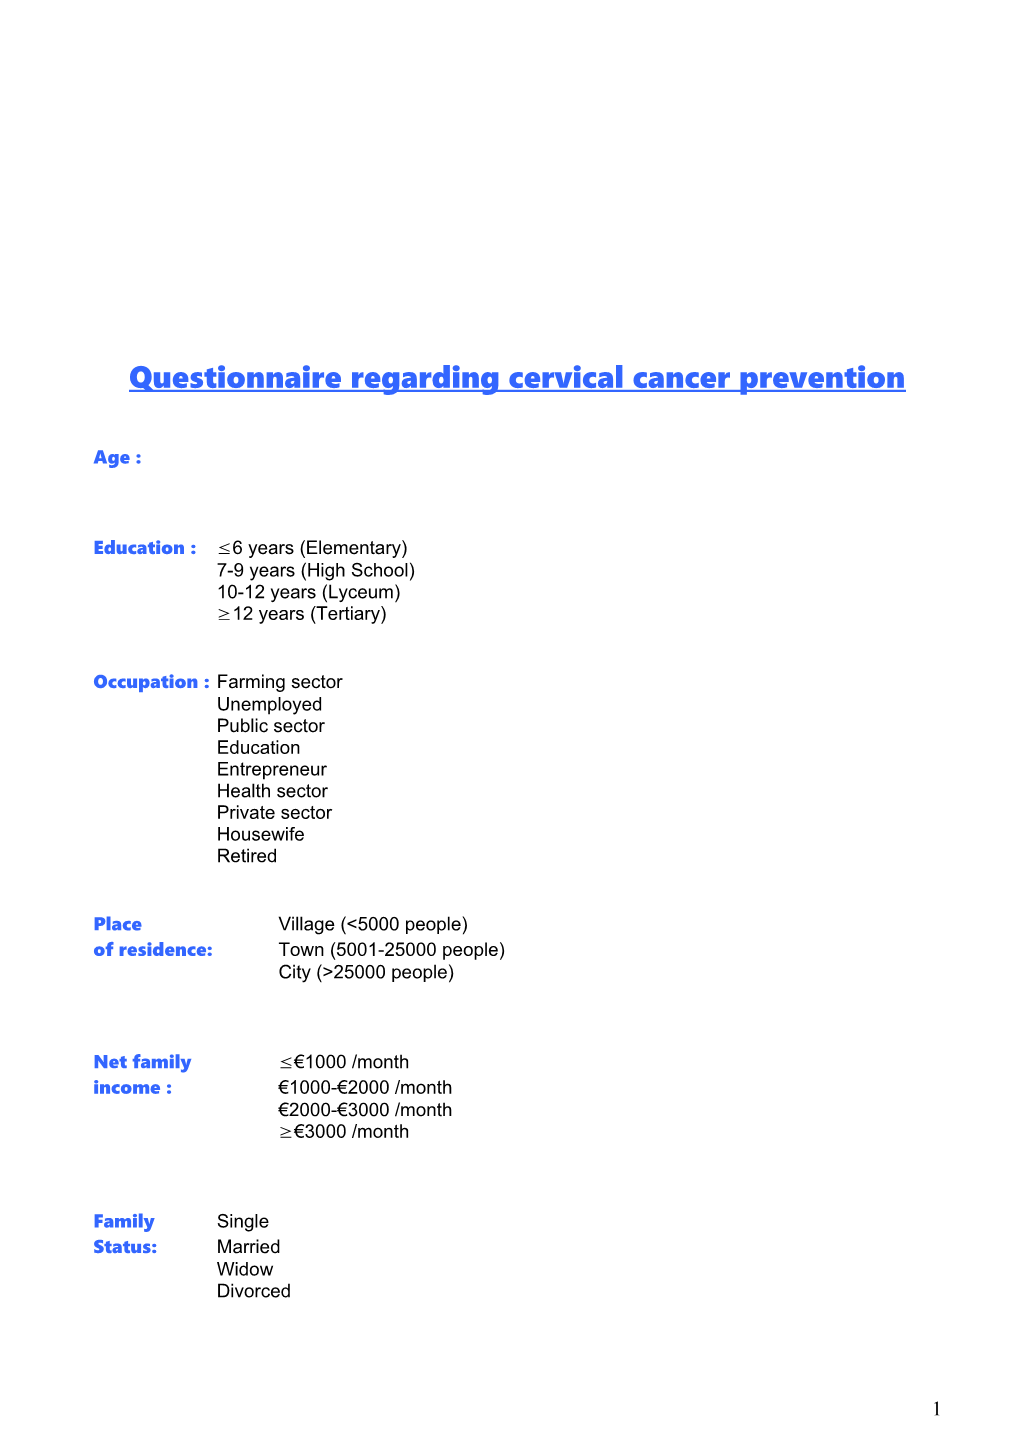 Questionnaire Regarding Cervical Cancer Prevention